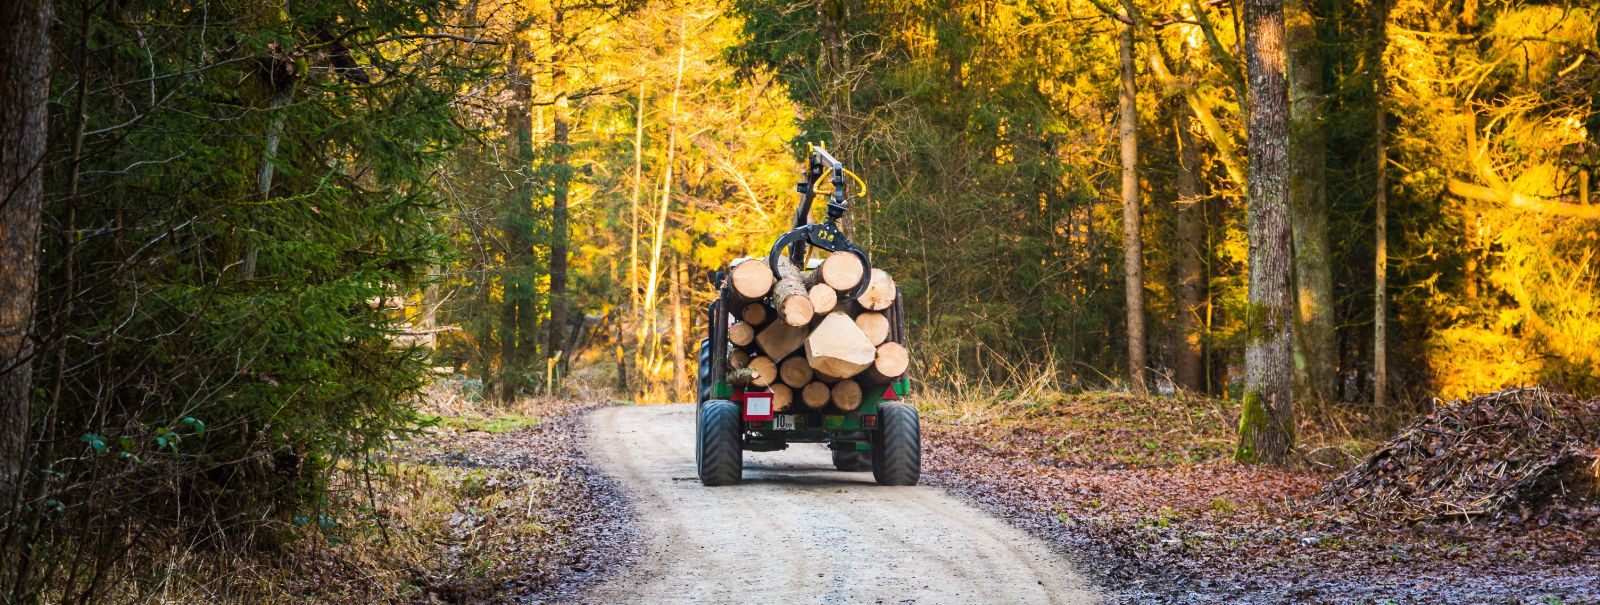 Tõhus metsahaldus on metsaökosüsteemide tervise ja tootlikkuse säilitamiseks hädavajalik. See hõlmab praktikate seeriat, mis on mõeldud metsade ökoloogiliste, m